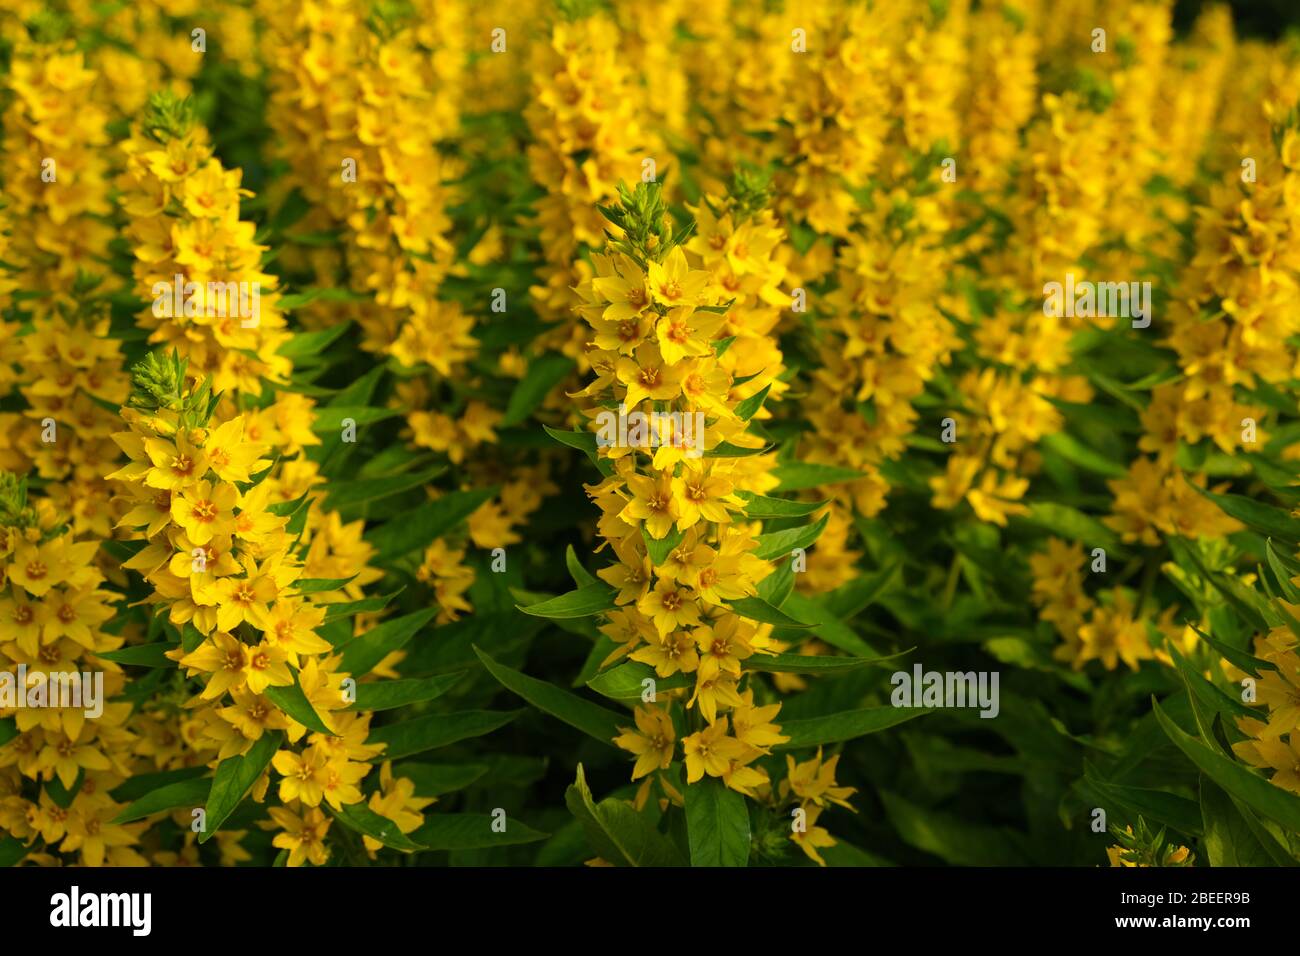 Gelbe Blüten der Whorled Loosestrife (Lysimachia mehrjährige Pflanze) im  Sommergarten, gelbe Blumen Natur, blühende gelbe Blumen, Nahauftriebe  schreien Stockfotografie - Alamy